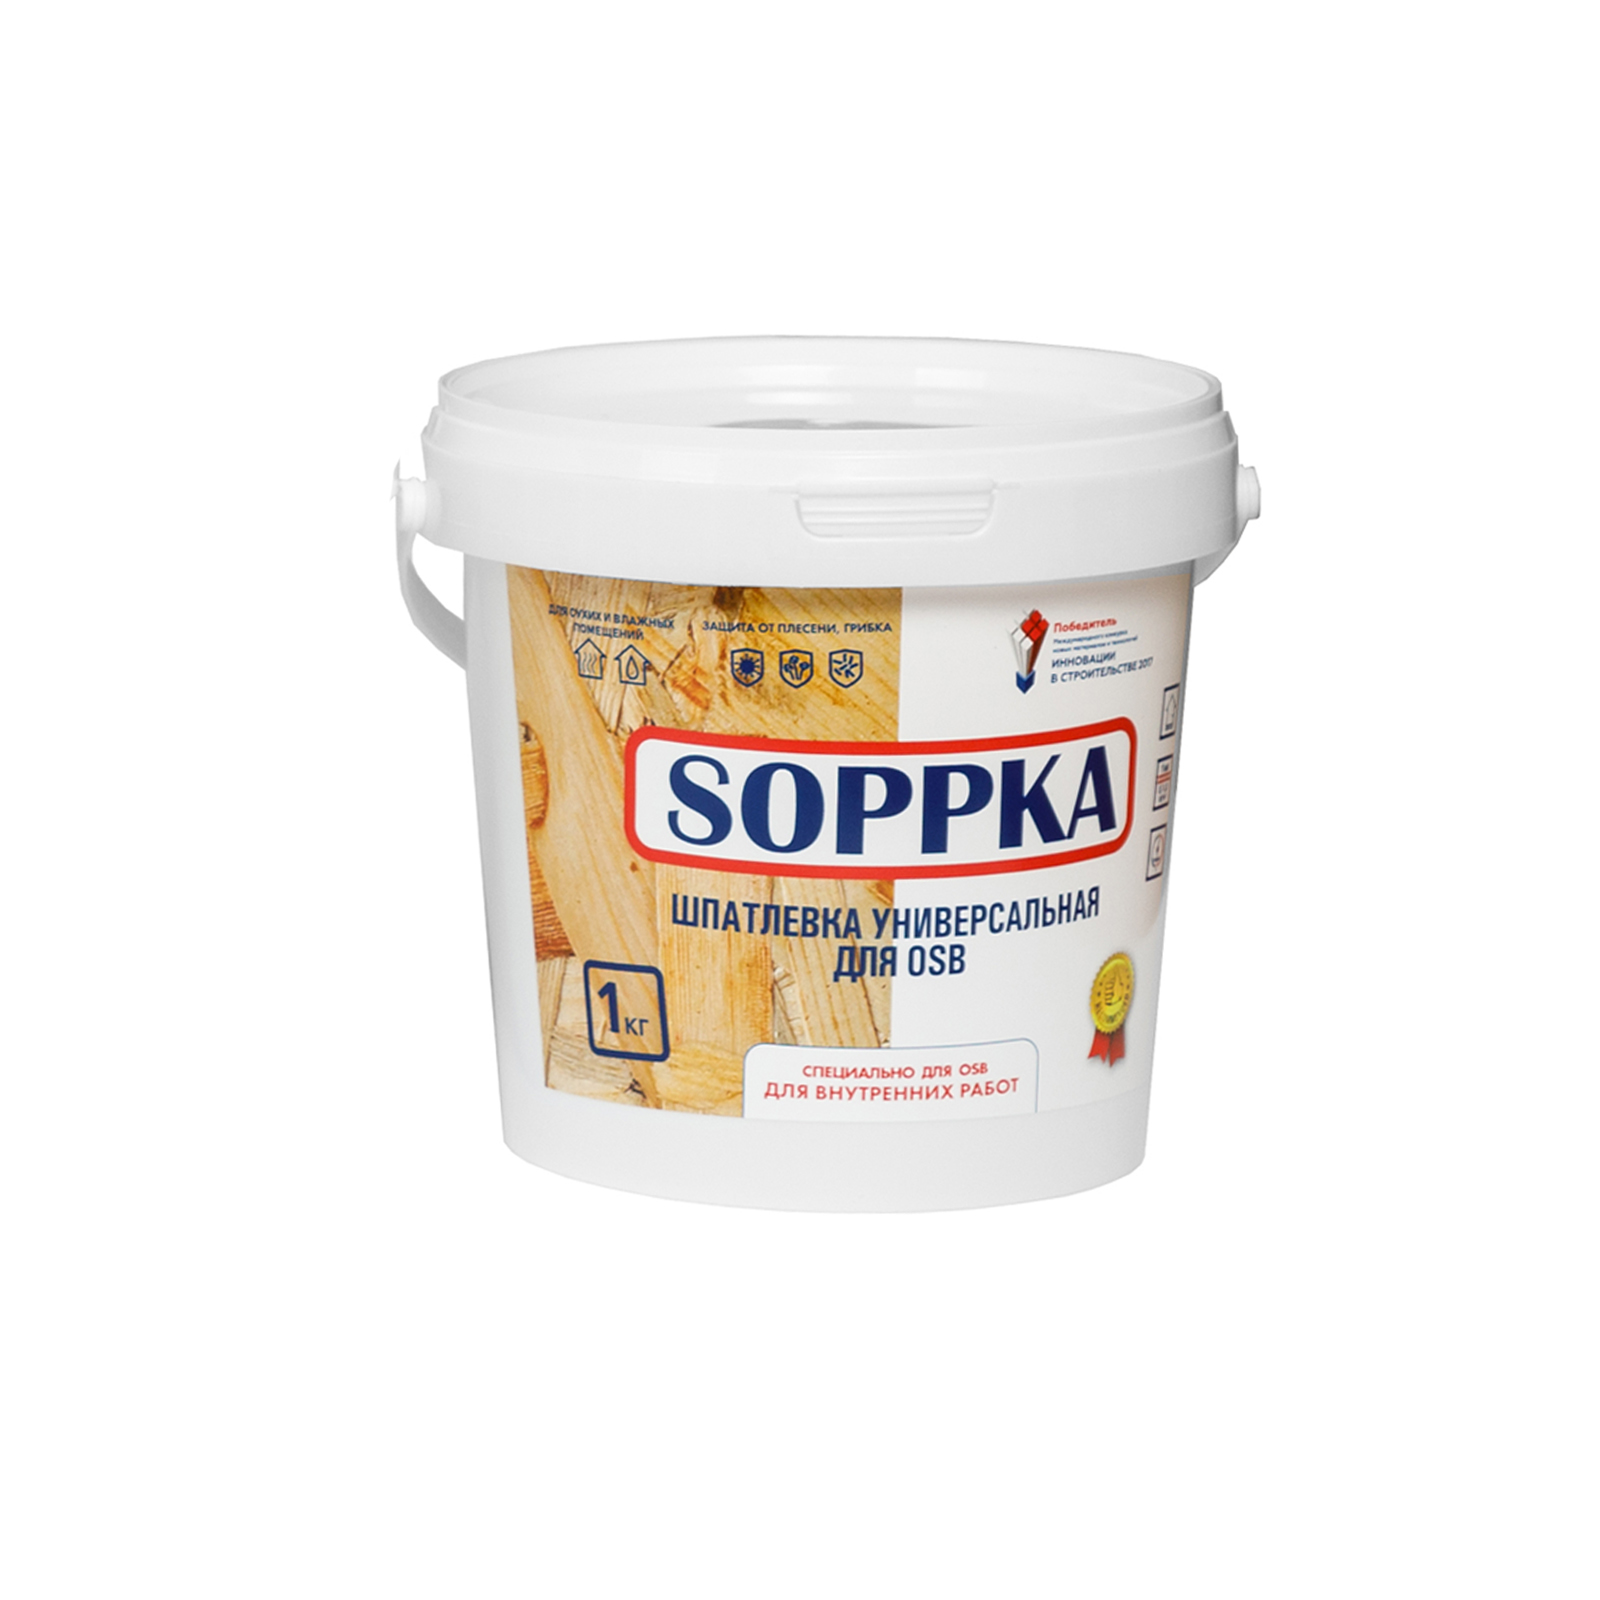 Soppka для osb. Шпатлевка-герметик для OSB Soppka Smart Elastik. Штукатурка фасадная Soppka OSB dekorator 12 кг. Sopka краска для OSB.